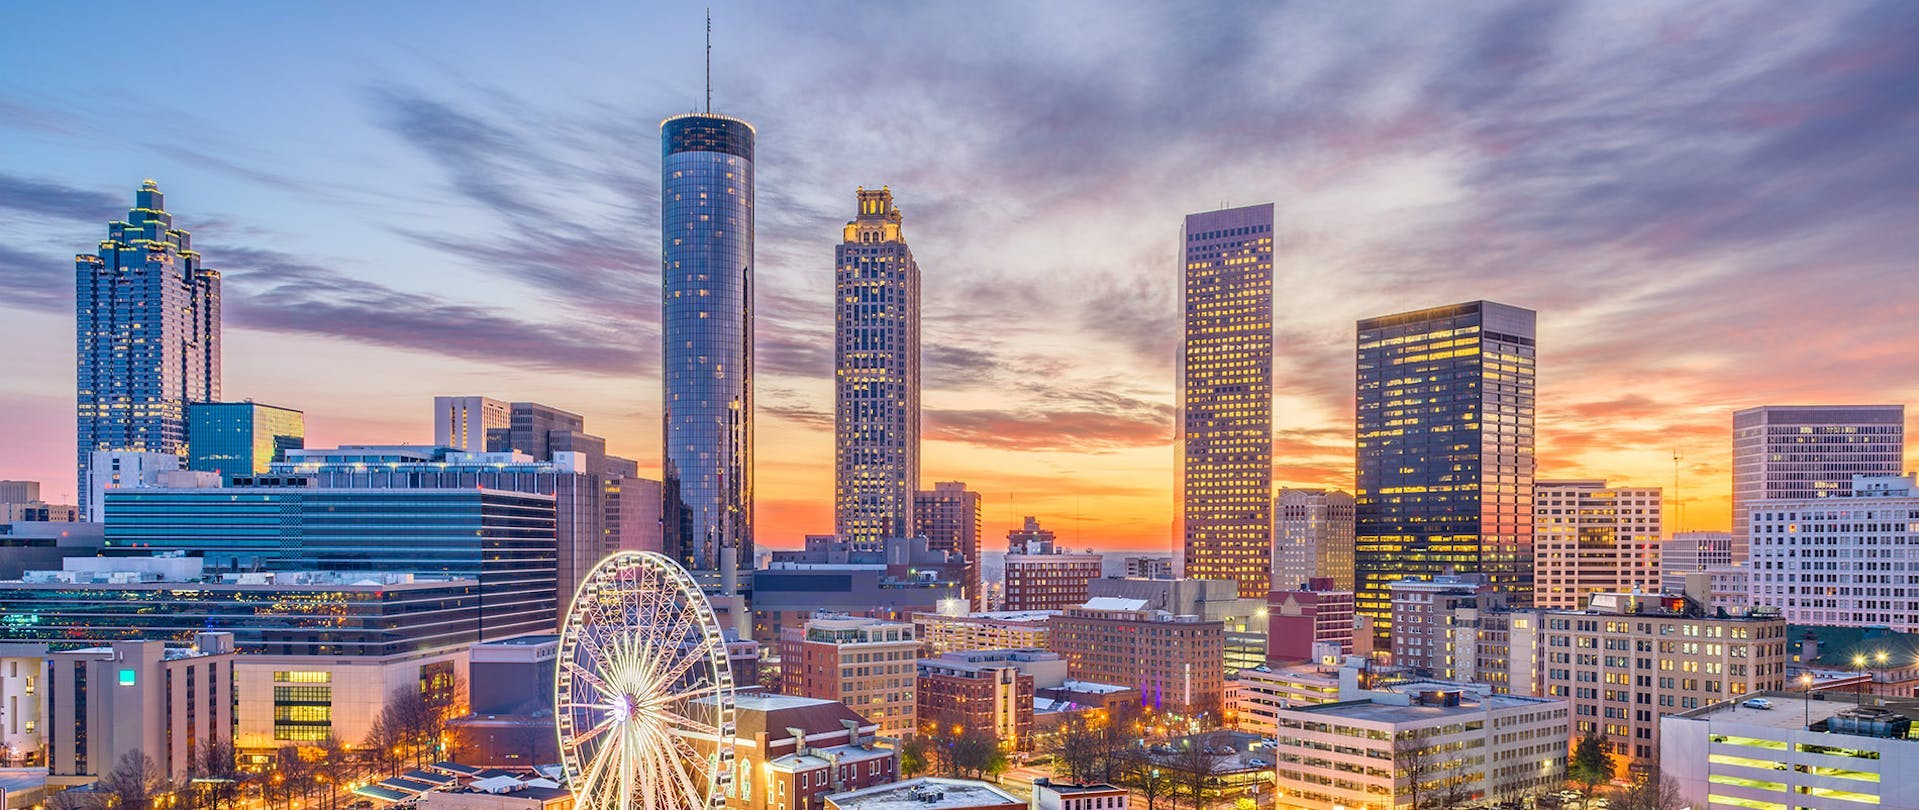 Atlanta Georgia City View